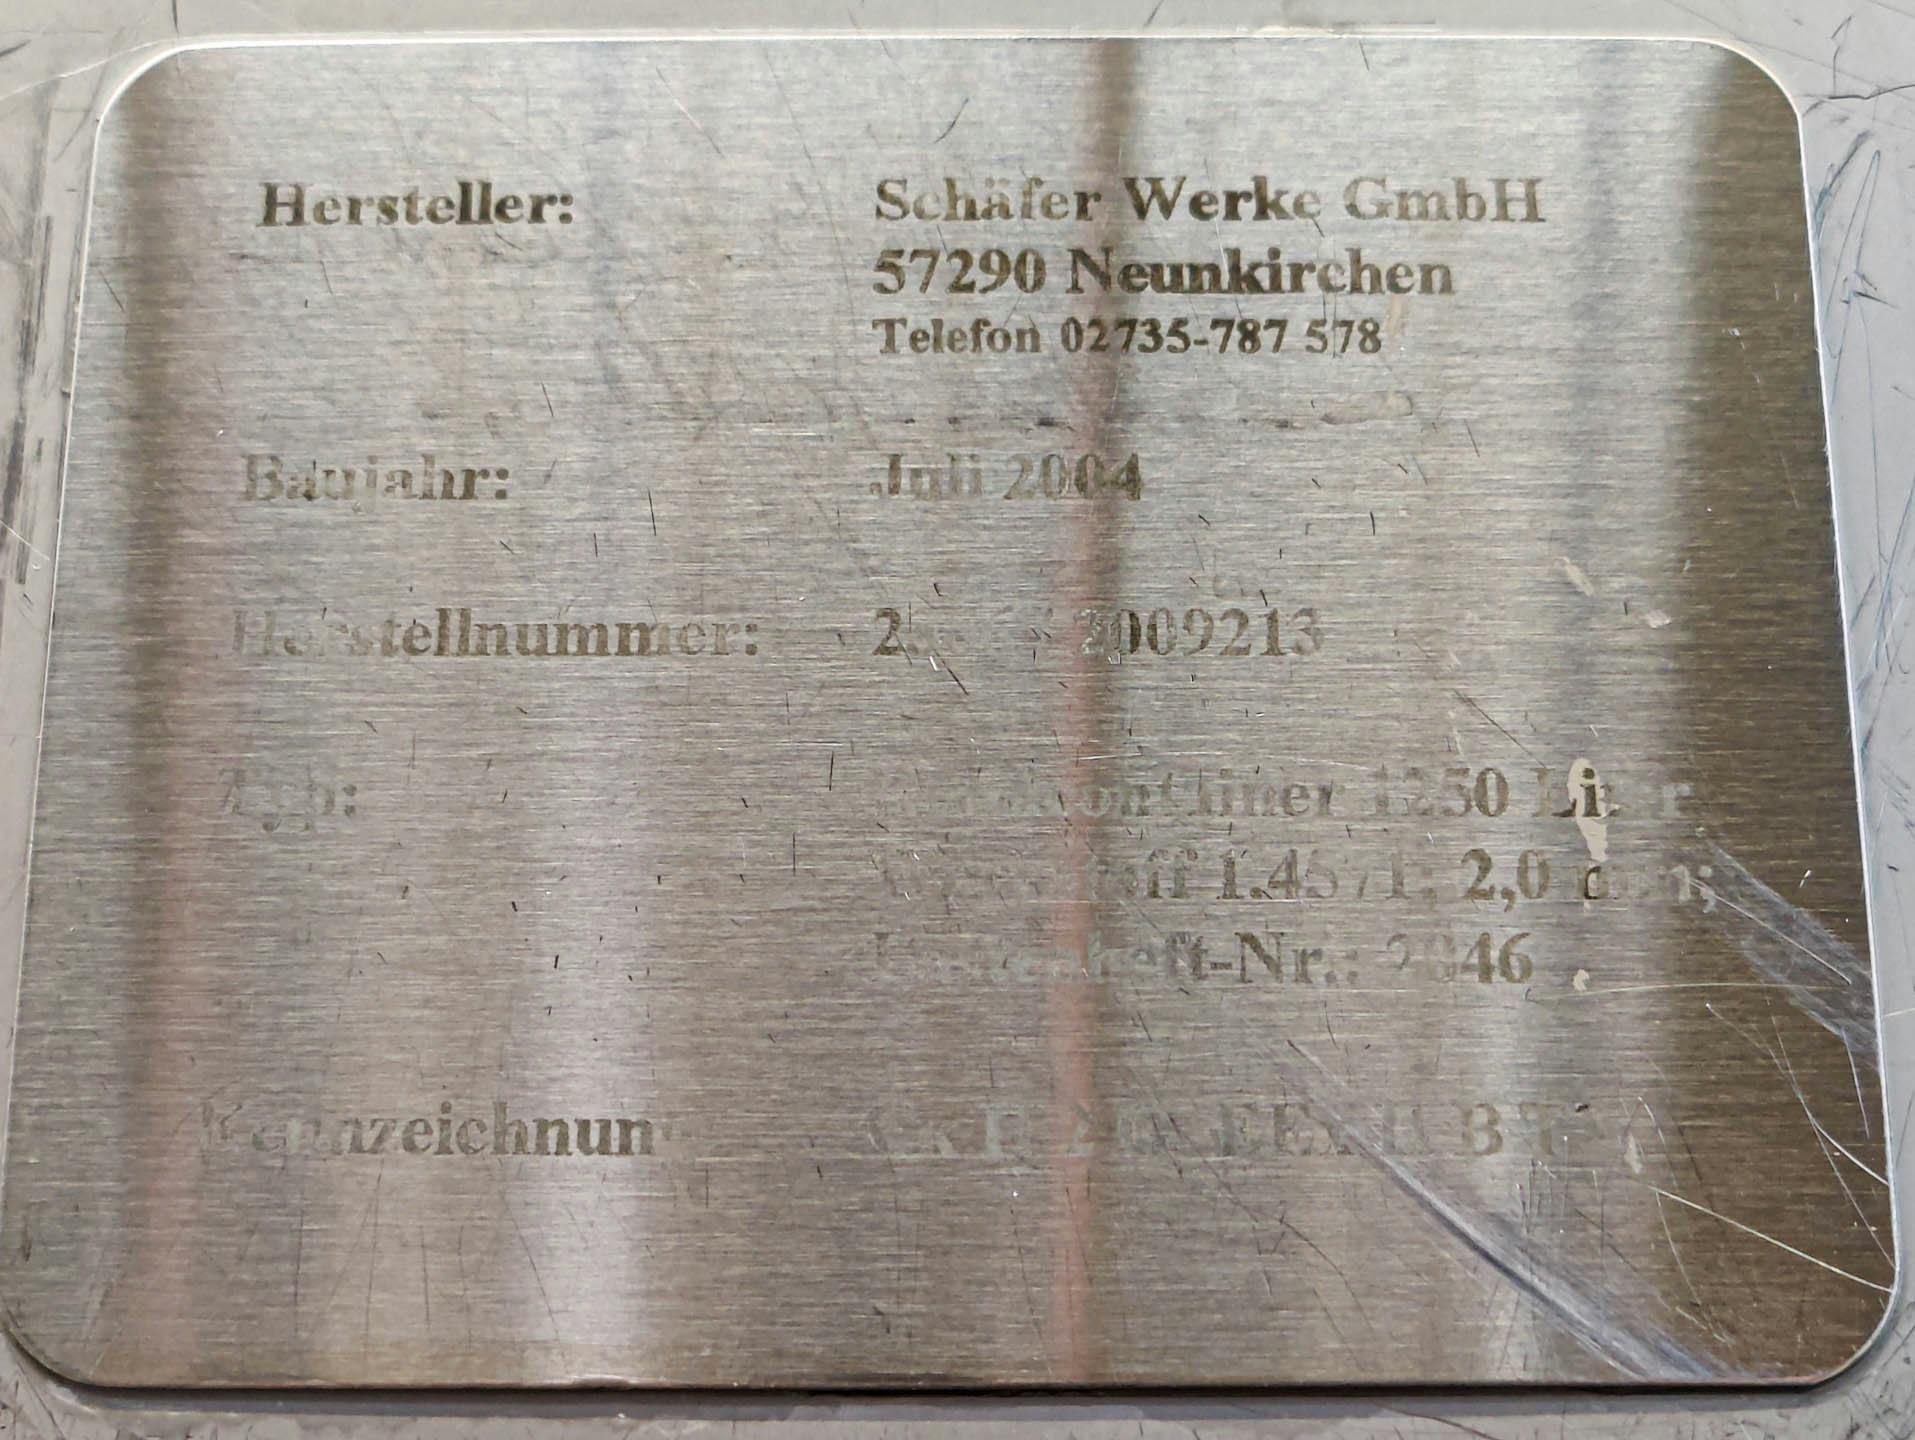 Schäfer Werke GmbH - Míchací nádoba - image 6